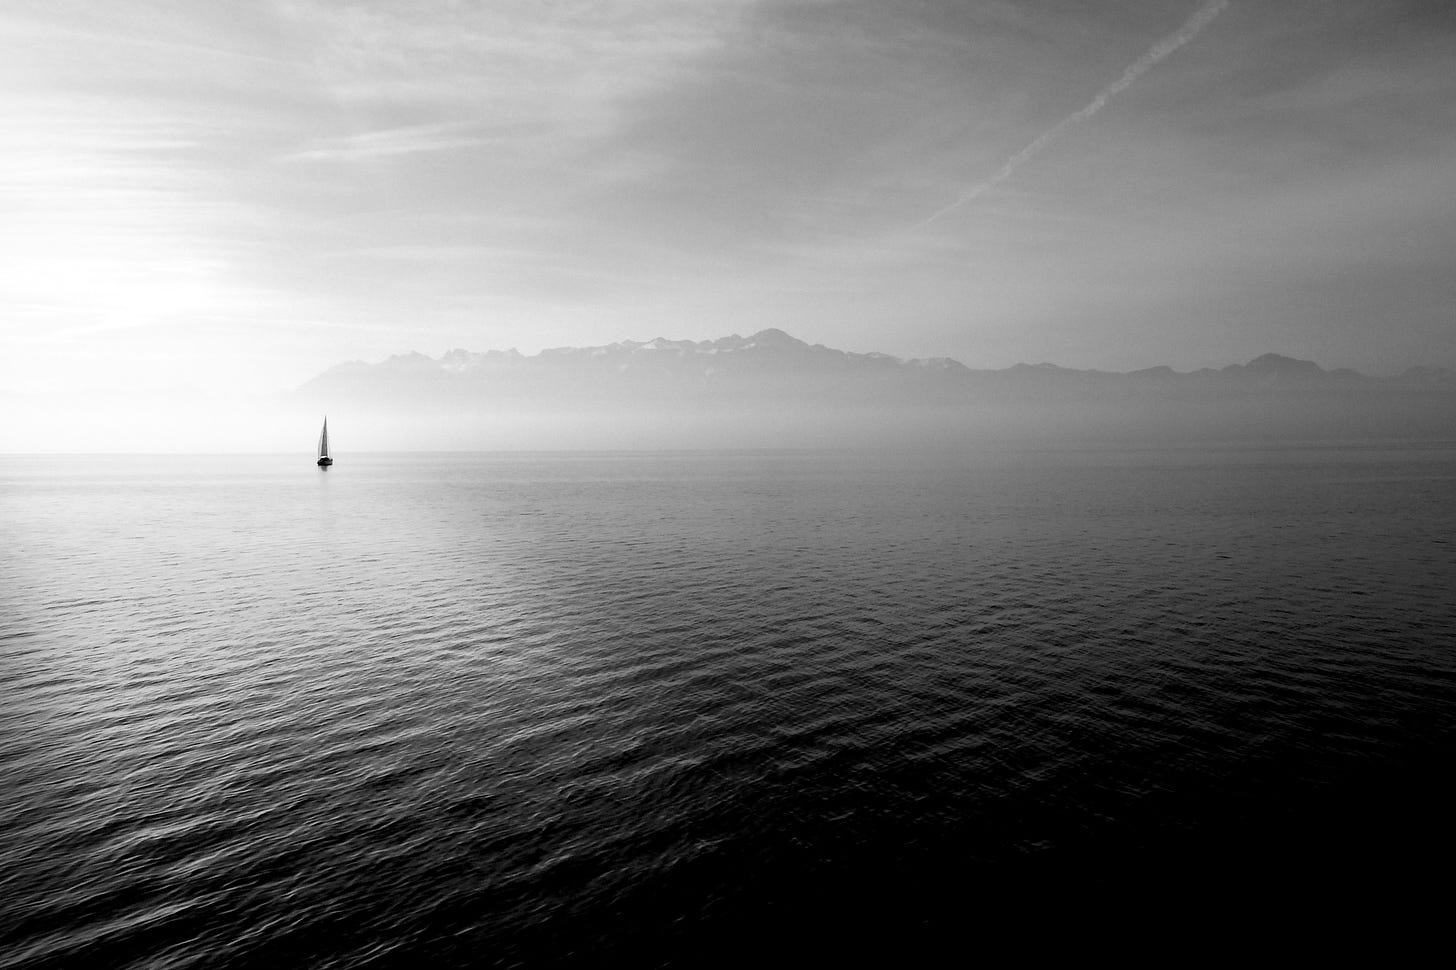 distesa di mare con una barca a vela a sinistra e sagome di nuvole sullo sfondo, in bianco e nero